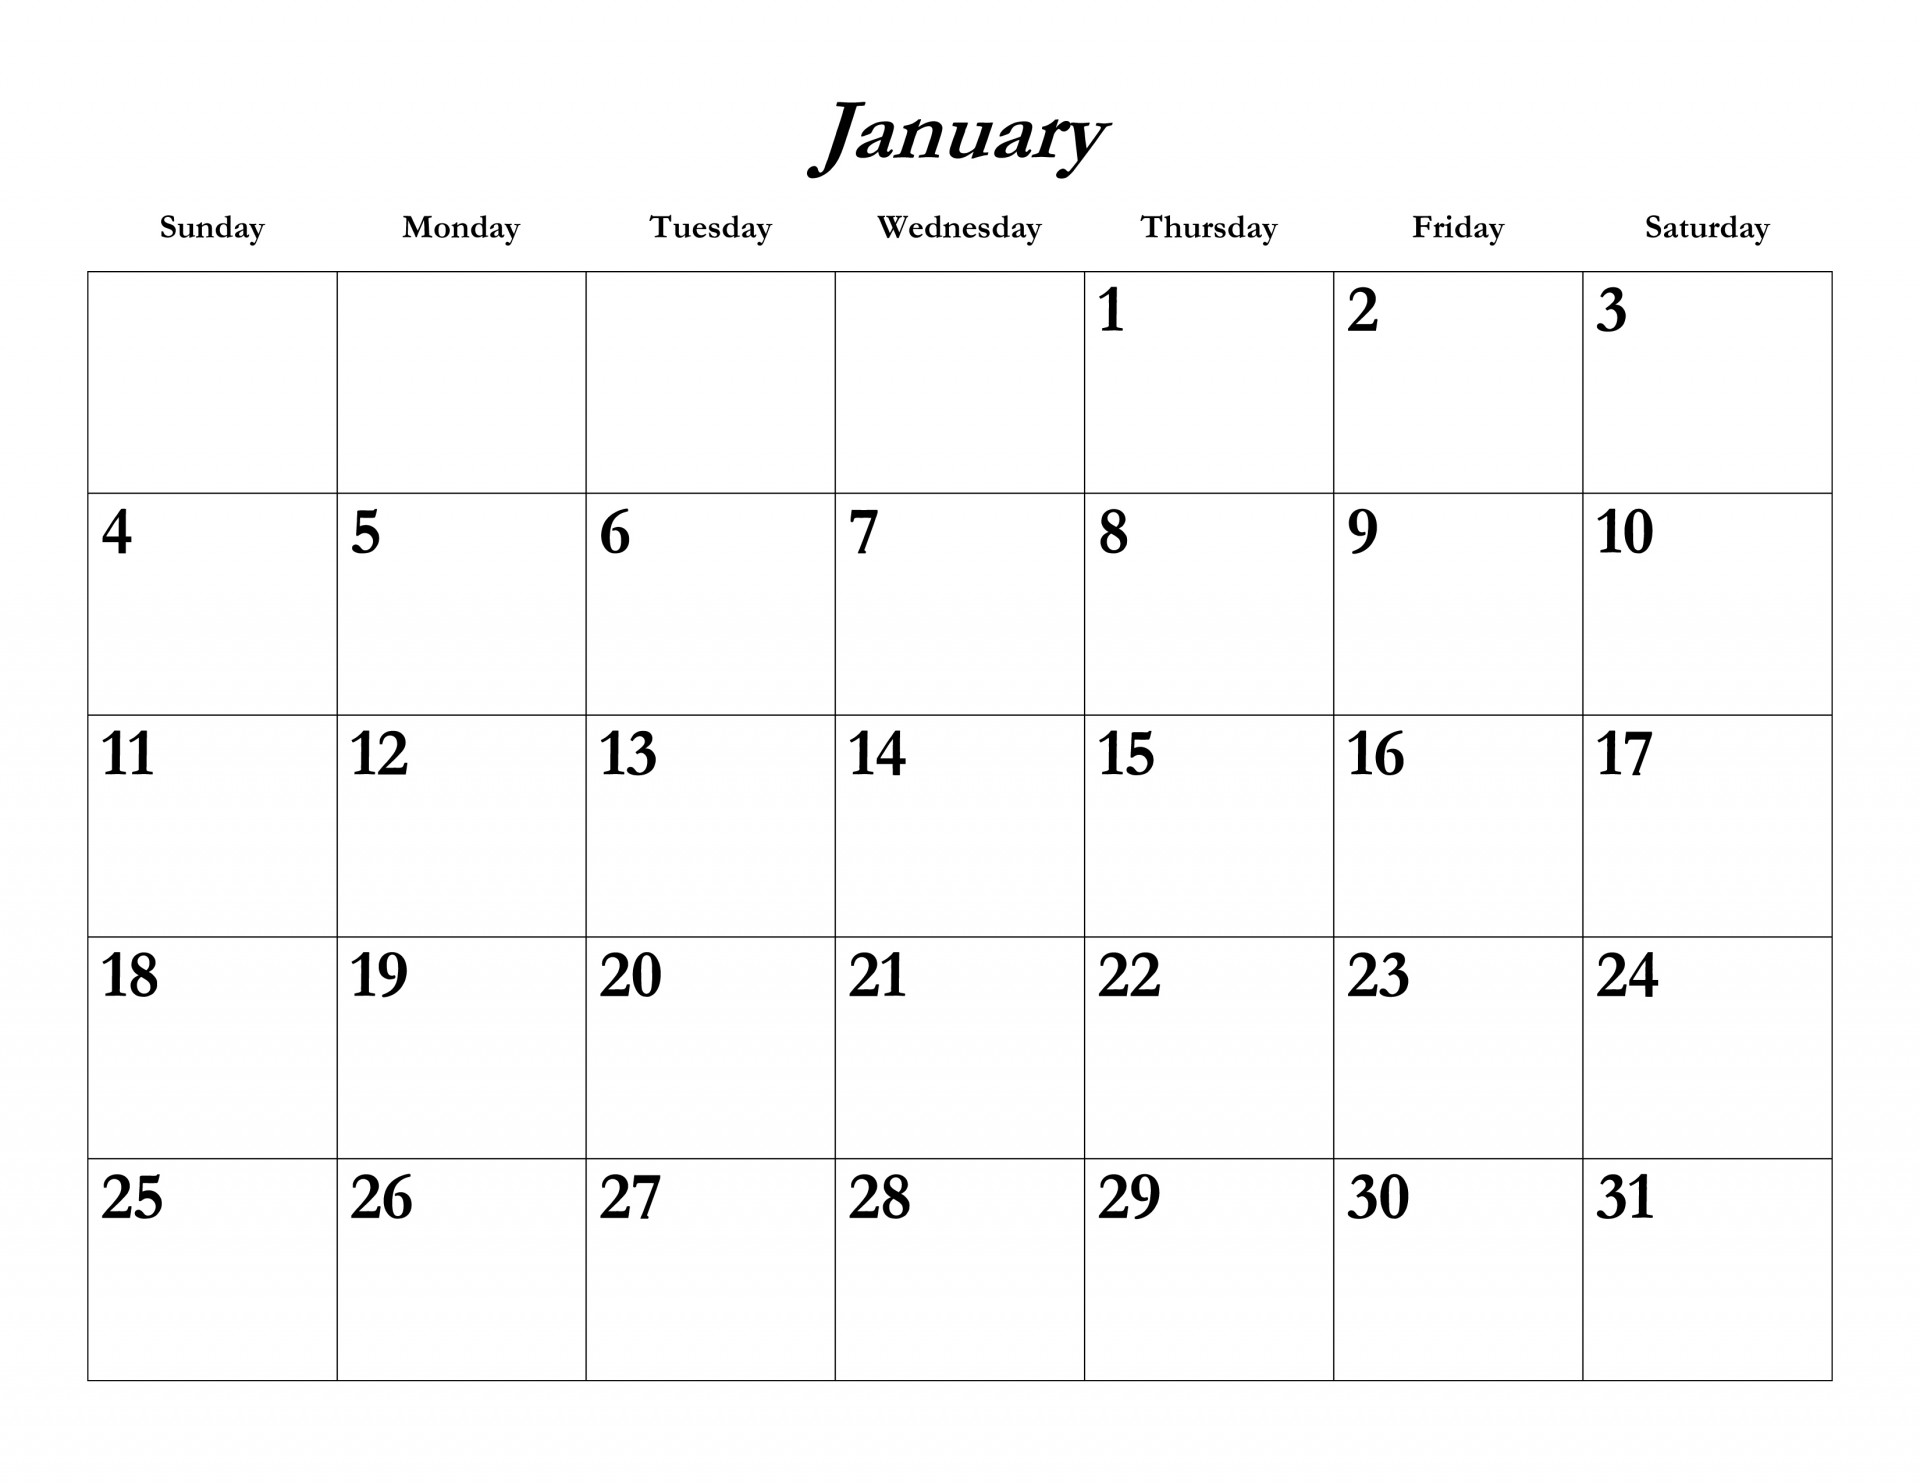 Január 2015 naptár sablon Szabad kép - Public Domain Pictures